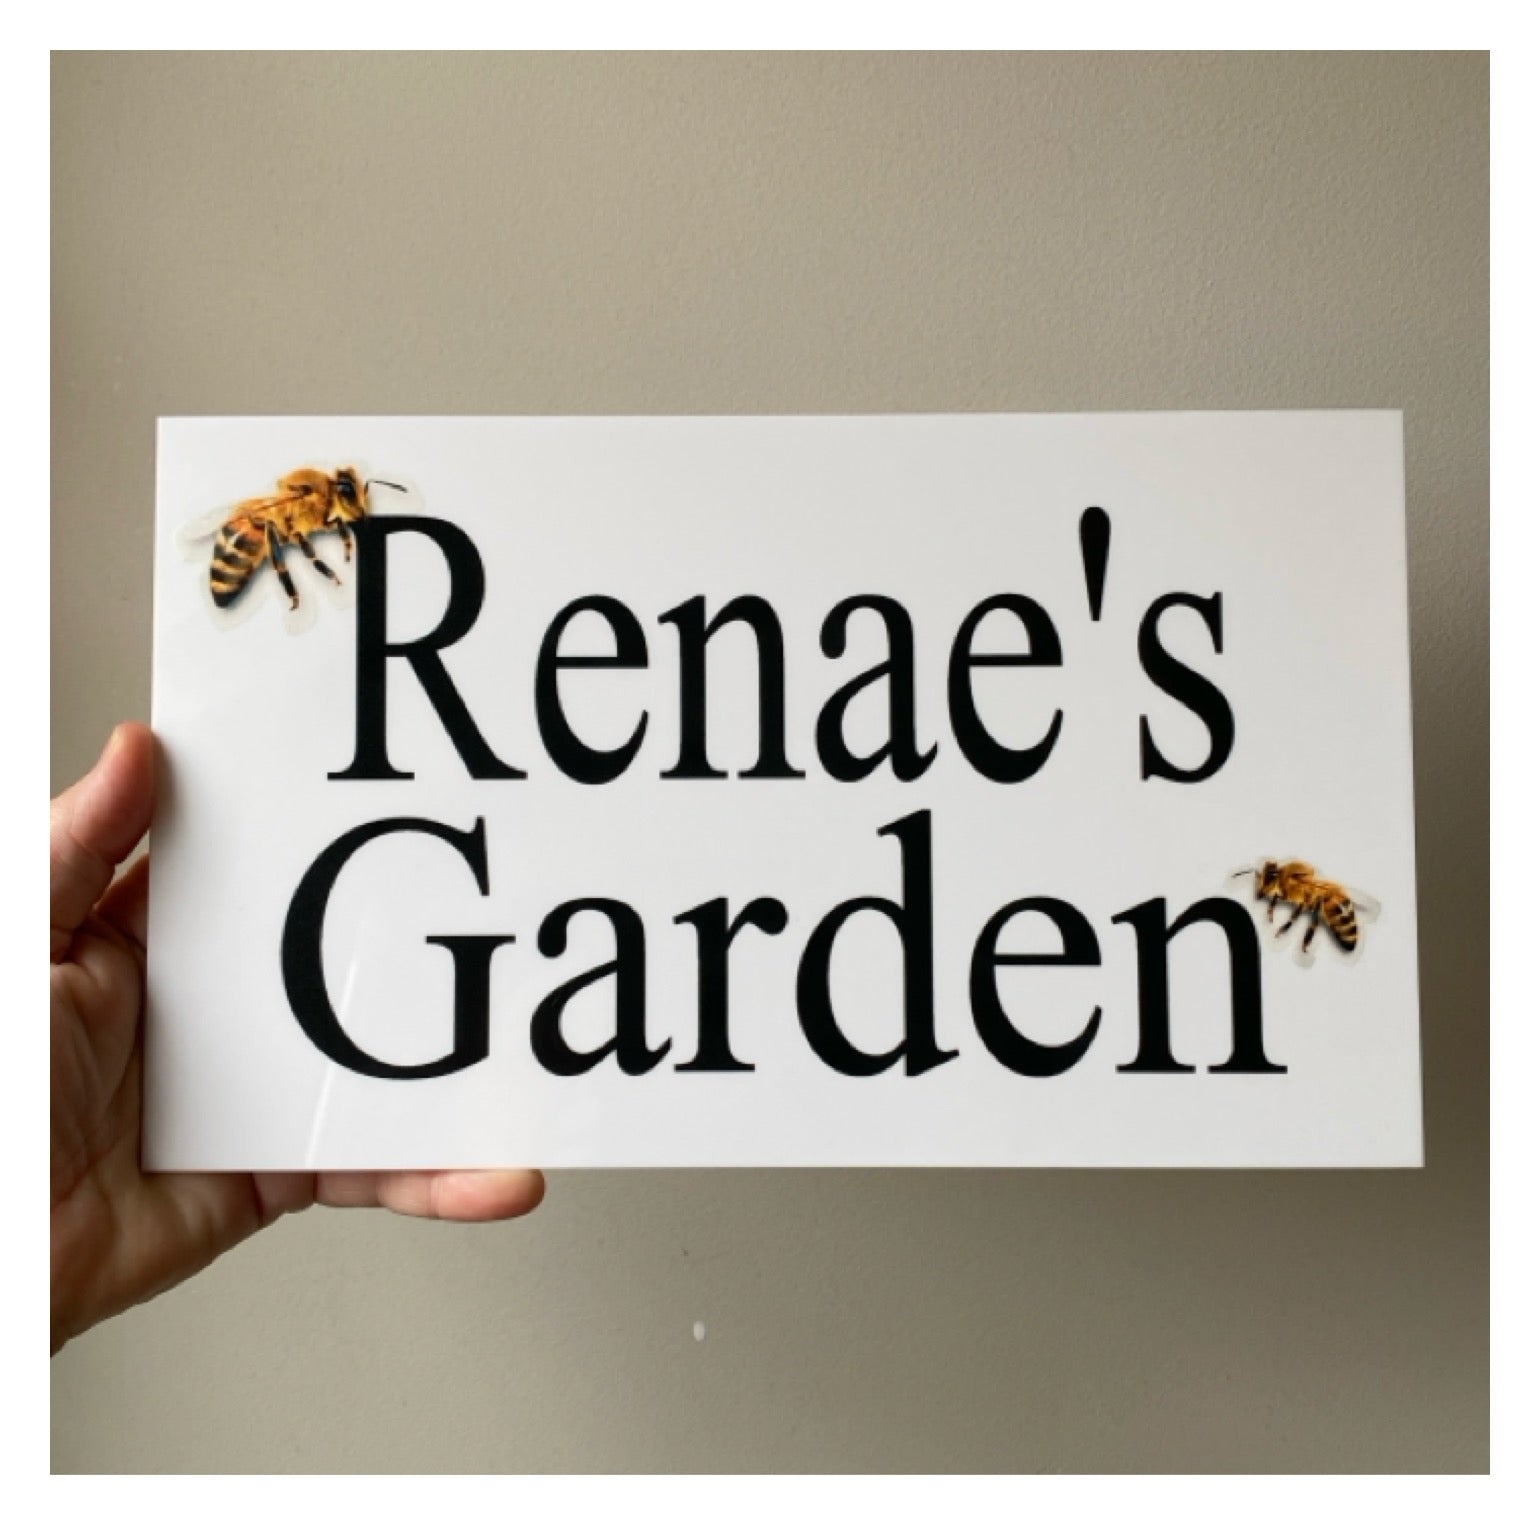 Bee Garden Custom Wording Sign - The Renmy Store Homewares & Gifts 